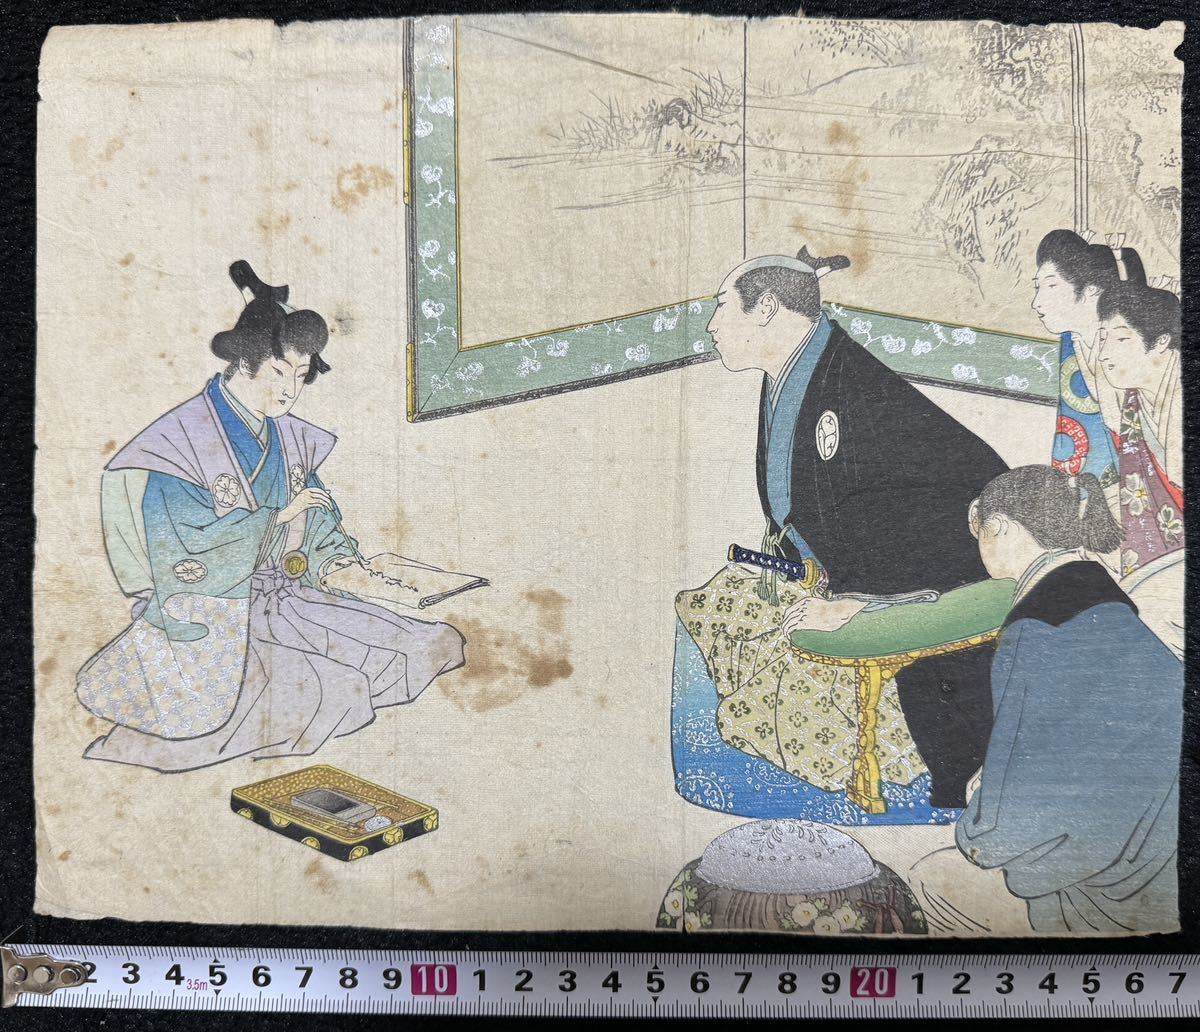 فترة ميجي/واجهة الكتاب الأصلية, لوحة المحارب, طباعة خشبية أصلية من نوع ukiyo-e, نيشيكي إي, مقاس متوسط, تلوين, أوكييو إي, مطبوعات, لوحات المحارب